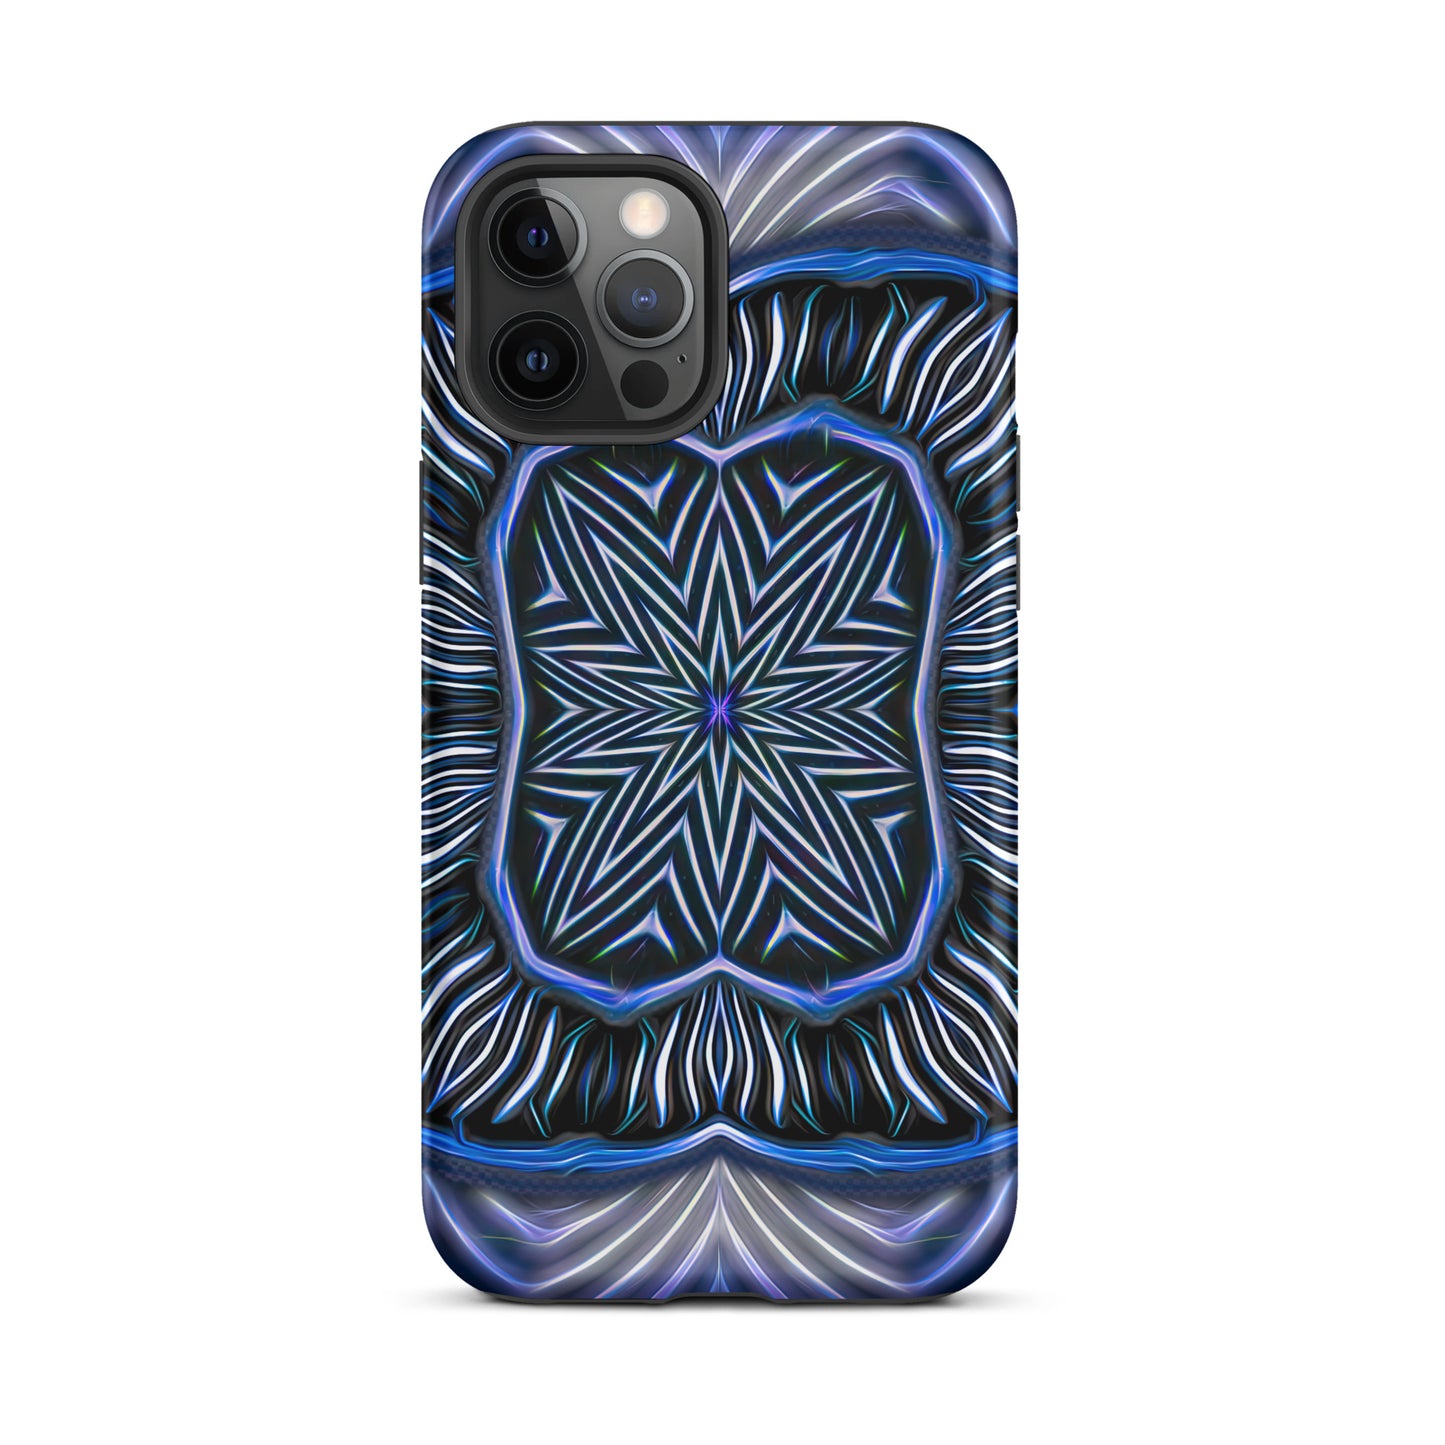 "Blue Electric" iCanvas Tough iPhone case